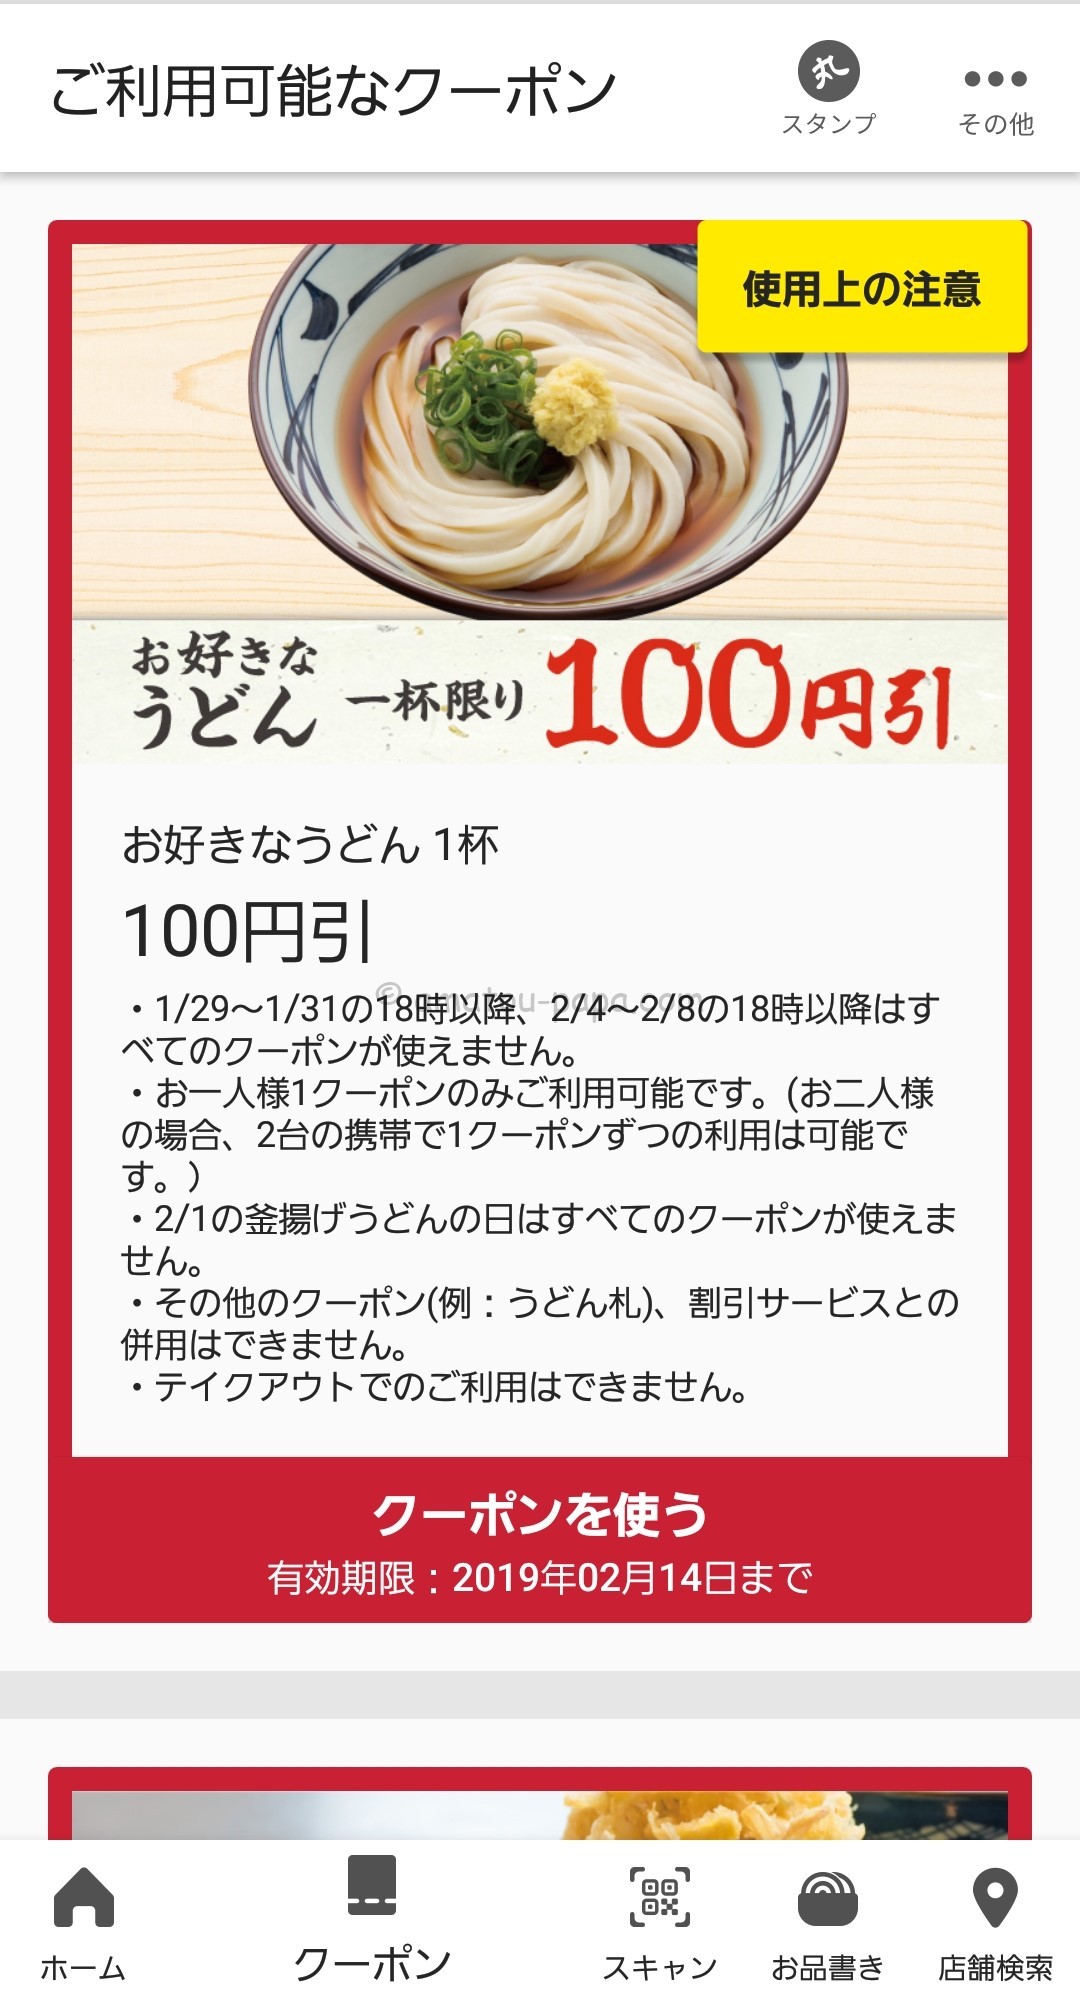 丸亀 製 麺 クーポン